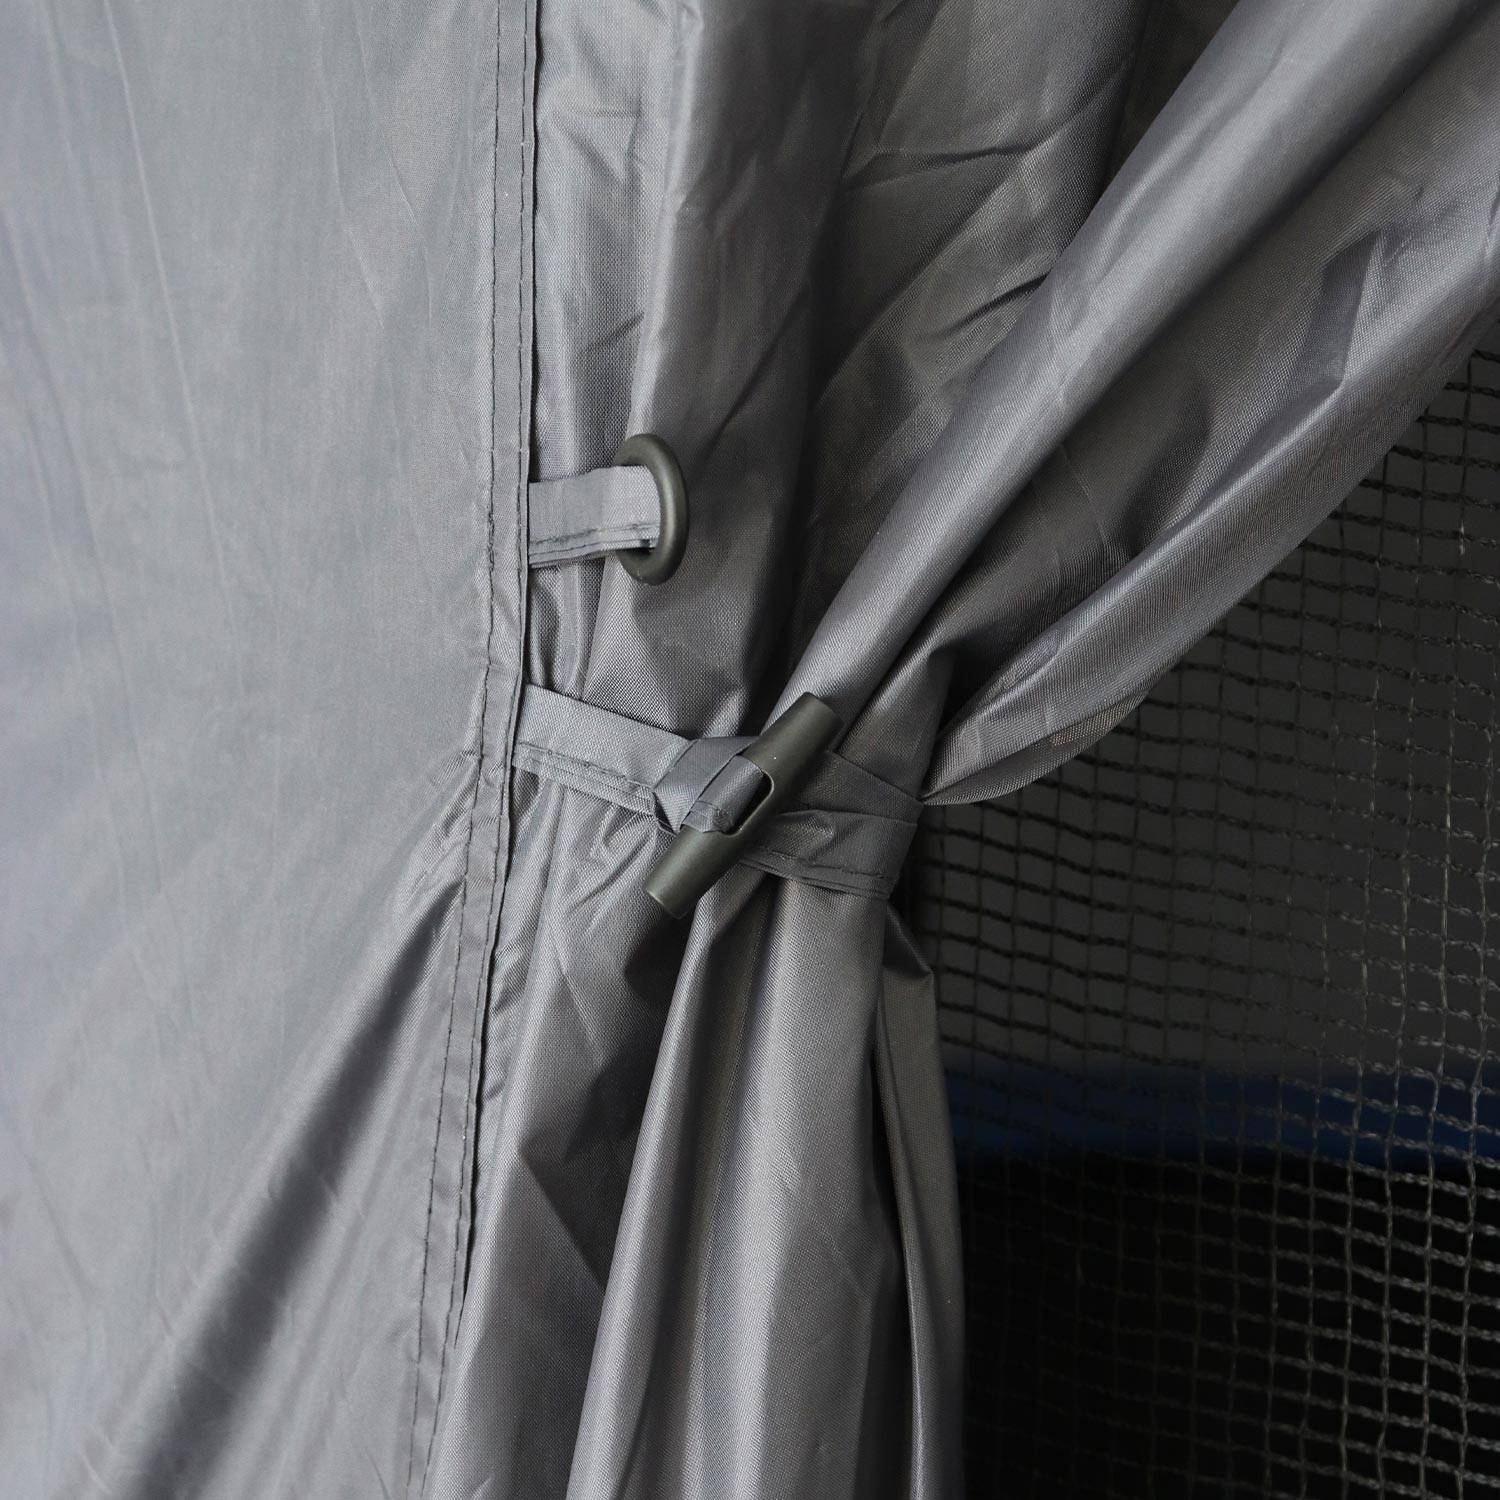 Campingzelt für Trampolin, Trampolihnütte, Polyester, UV-behandelt, 1 Tür, 3 Fenster und Transporttasche Photo7